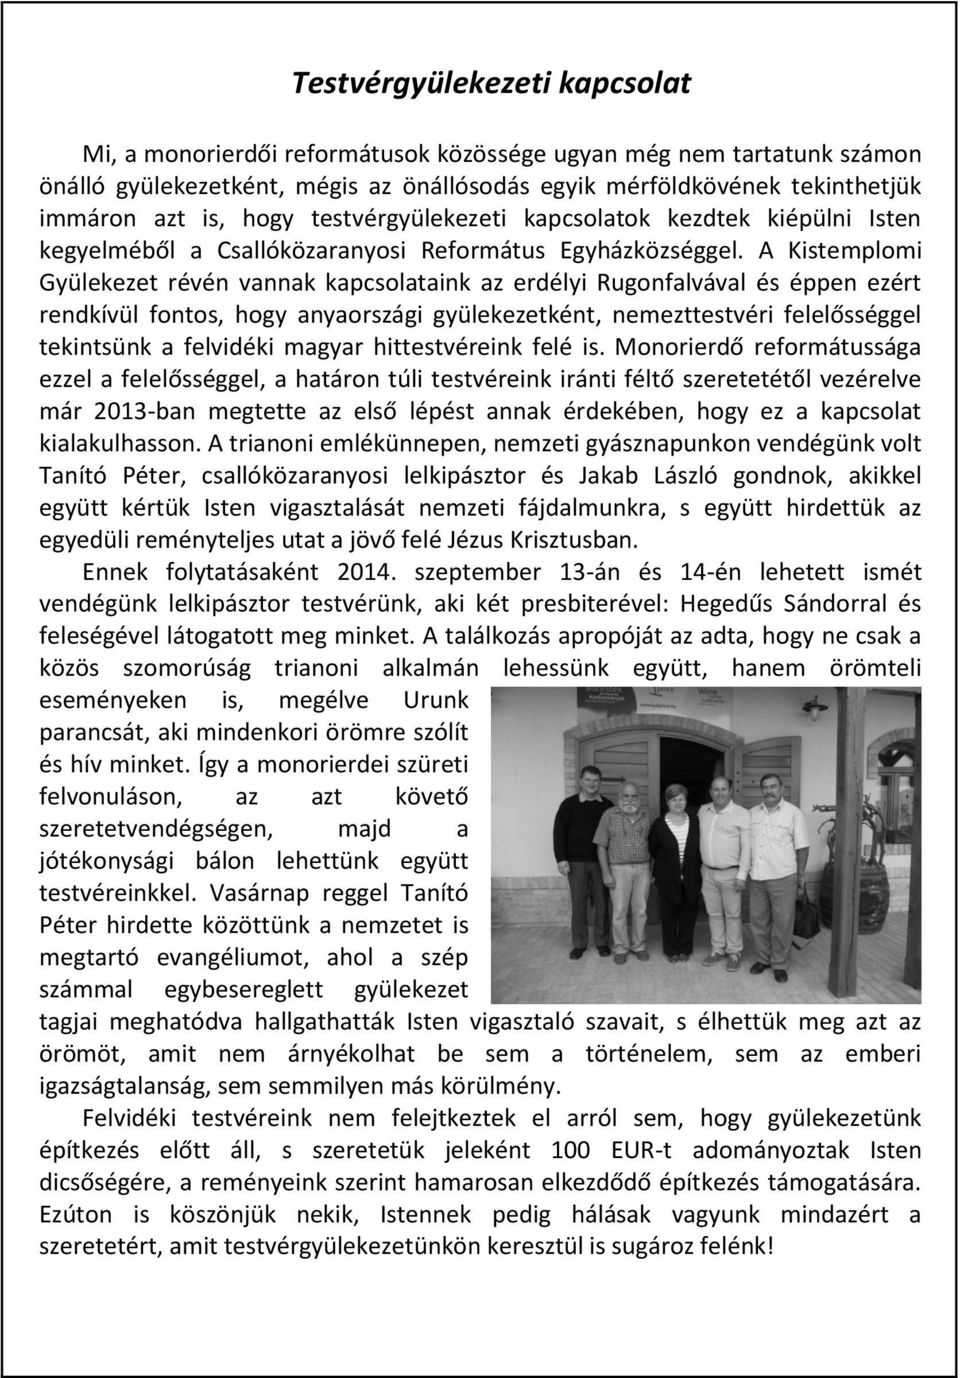 A Kistemplomi Gyülekezet révén vannak kapcsolataink az erdélyi Rugonfalvával és éppen ezért rendkívül fontos, hogy anyaországi gyülekezetként, nemezttestvéri felelősséggel tekintsünk a felvidéki